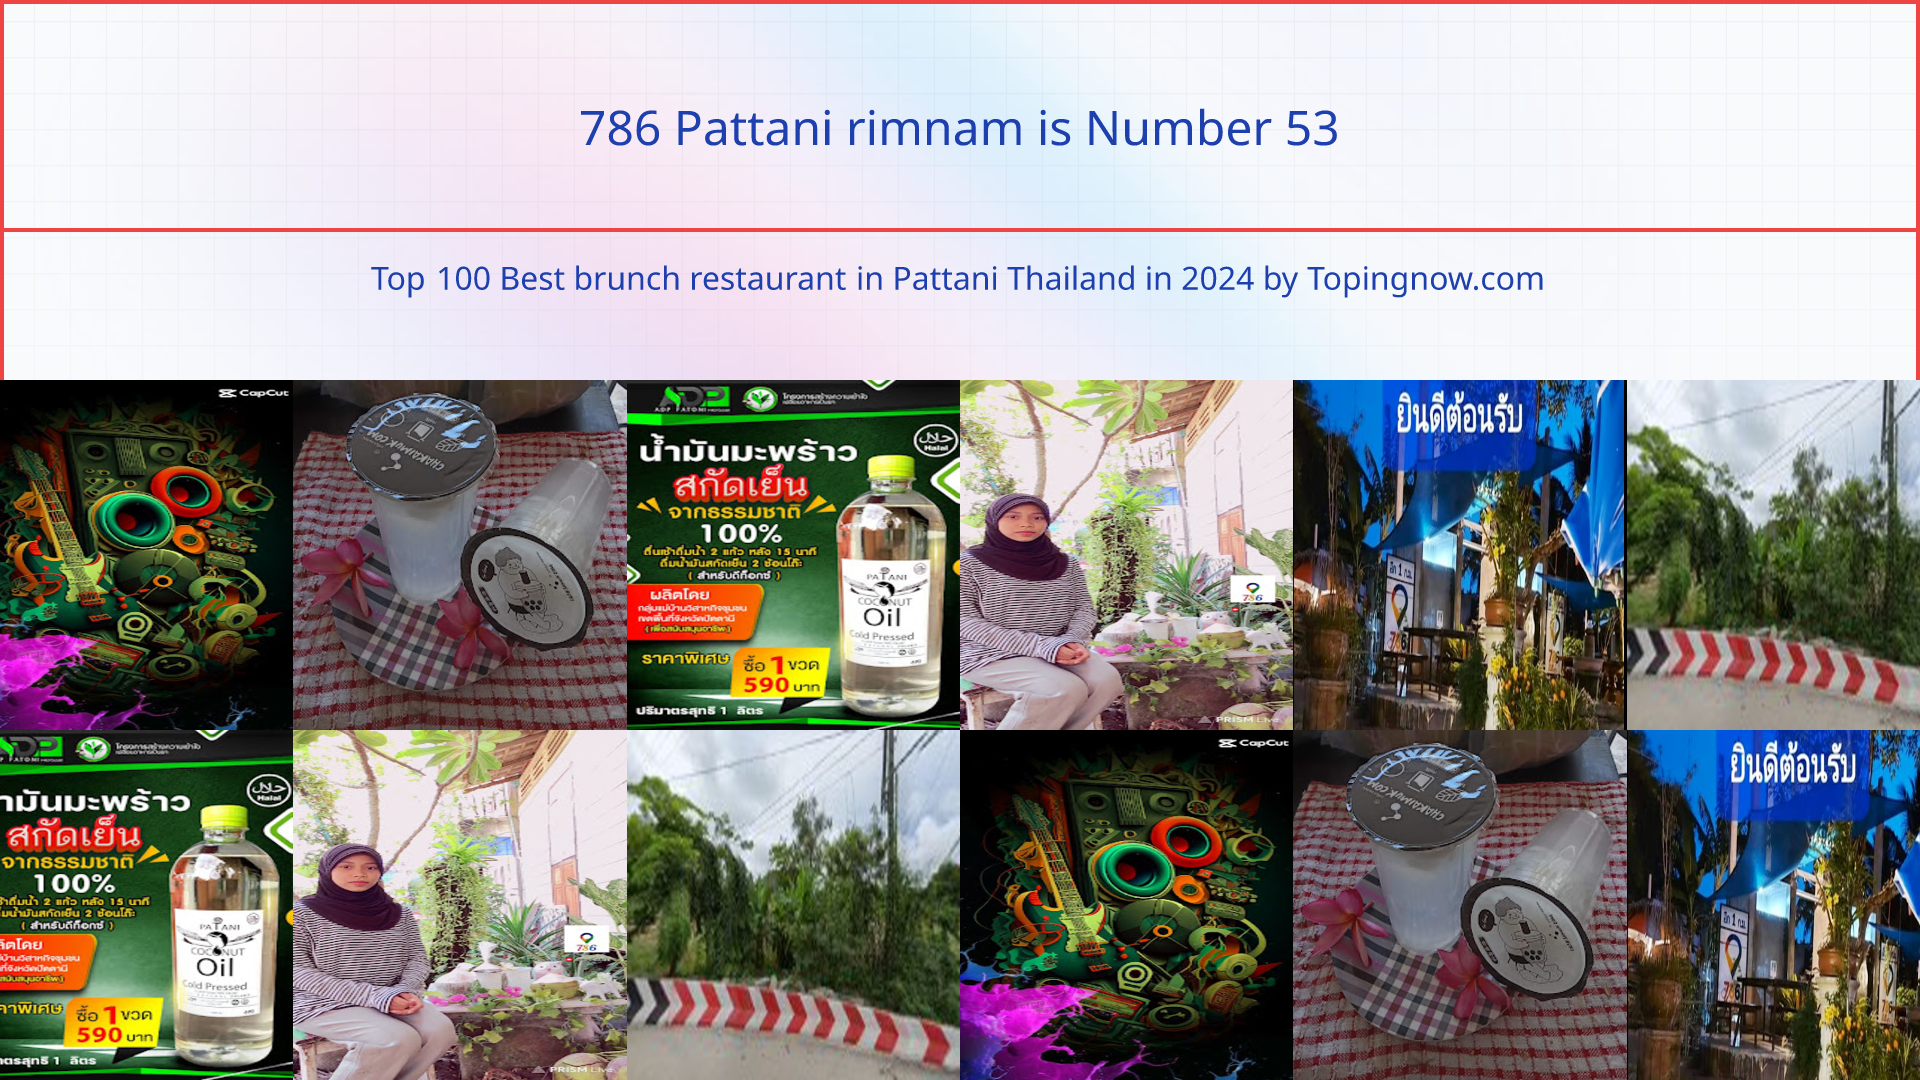 786 Pattani rimnam: Top 100 Best brunch restaurant in Pattani Thailand in 2024